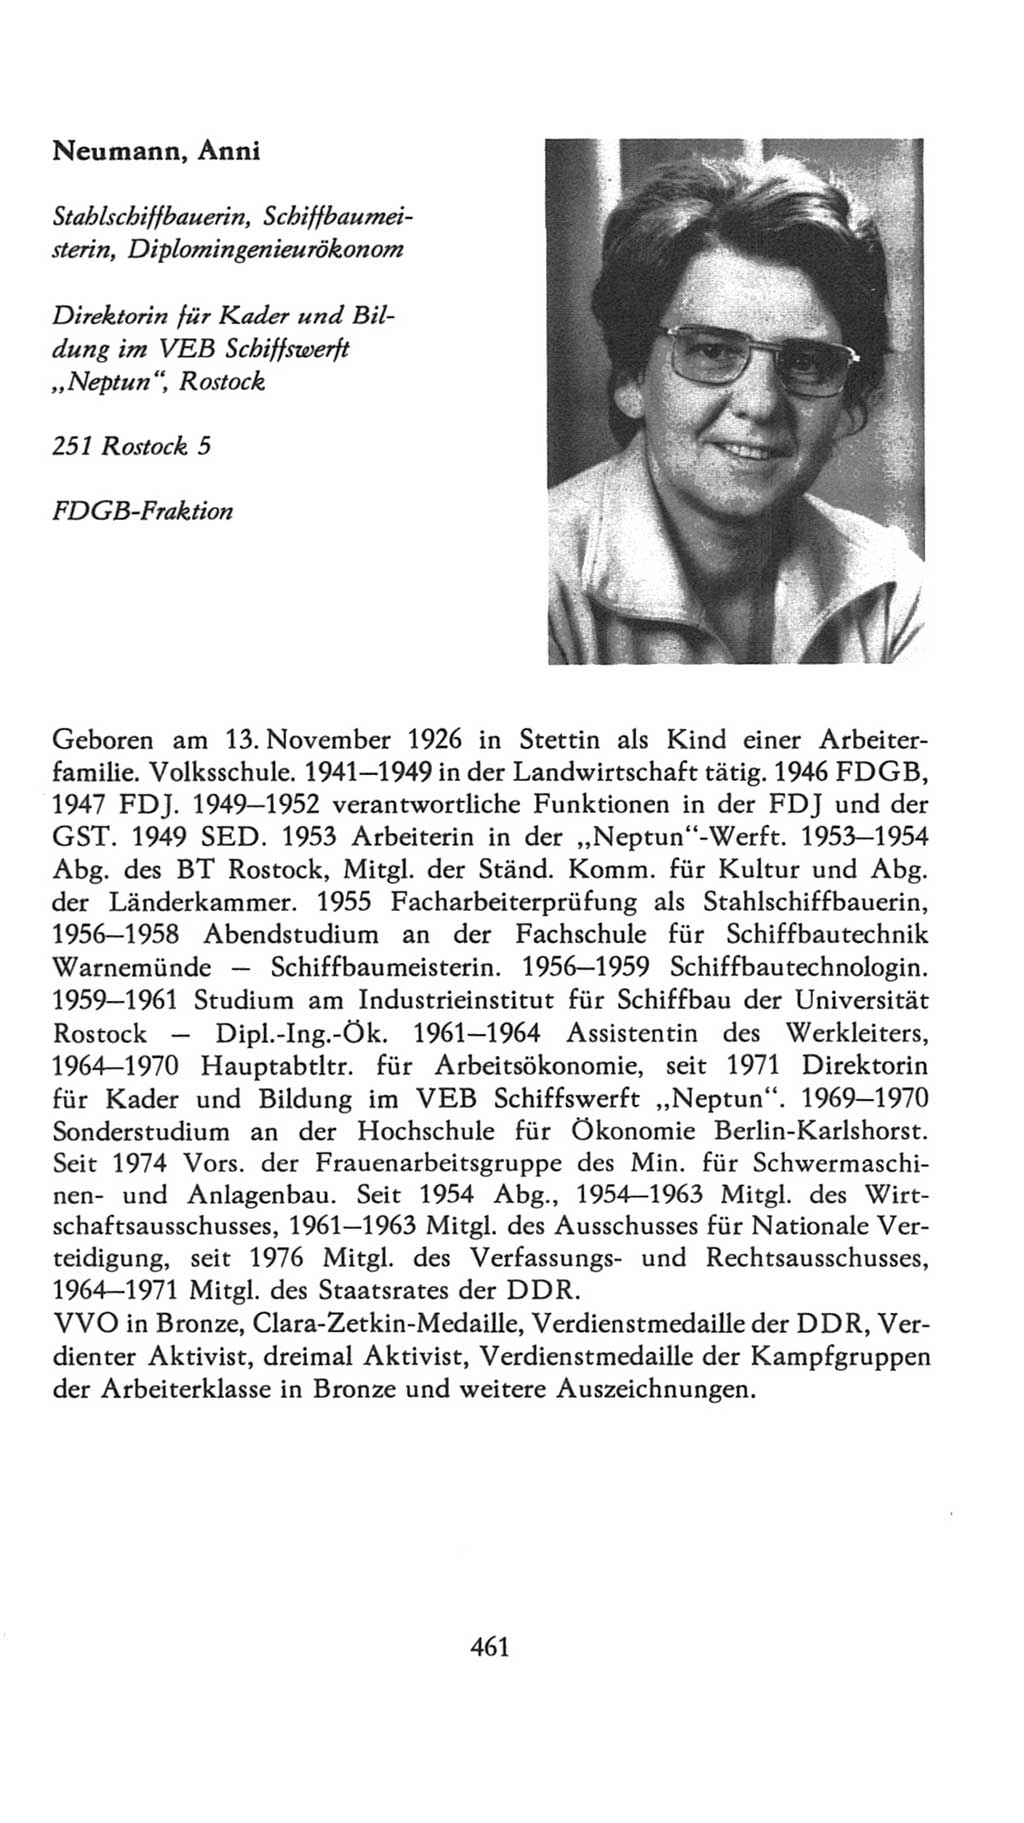 Volkskammer (VK) der Deutschen Demokratischen Republik (DDR), 7. Wahlperiode 1976-1981, Seite 461 (VK. DDR 7. WP. 1976-1981, S. 461)